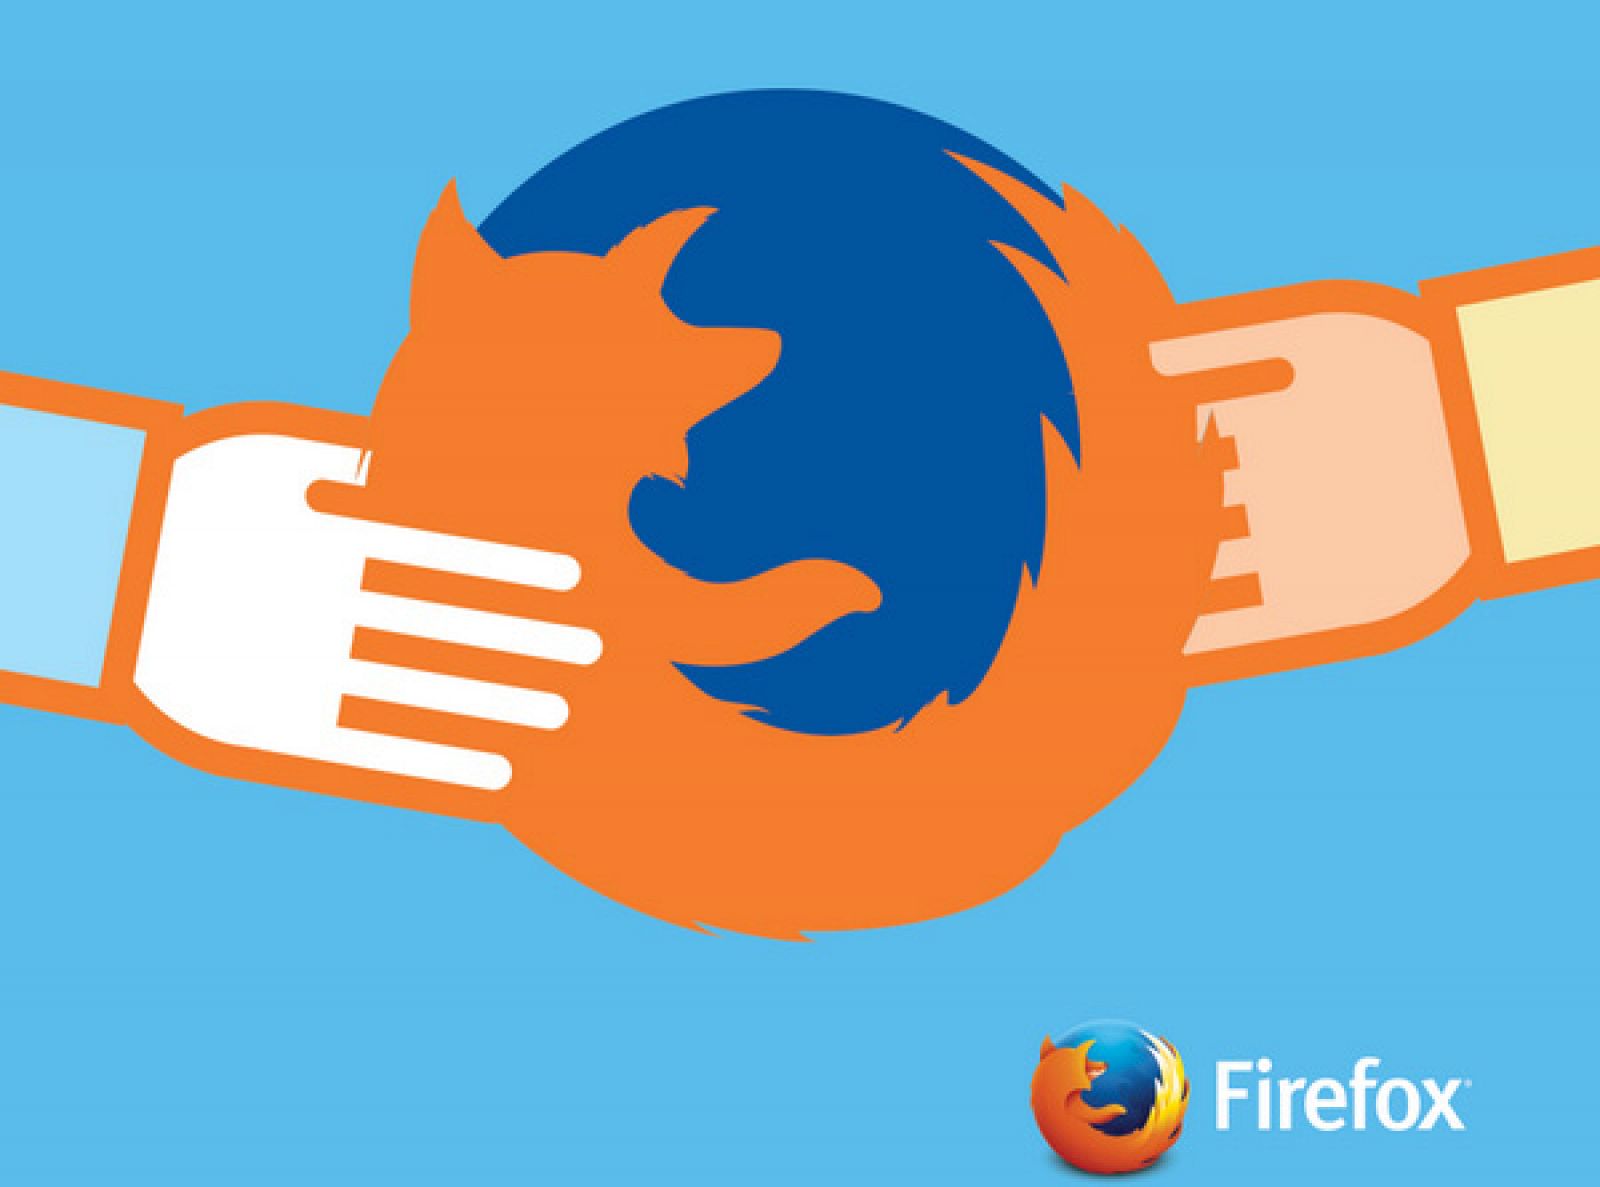 Infografía con el logo de Firefox.